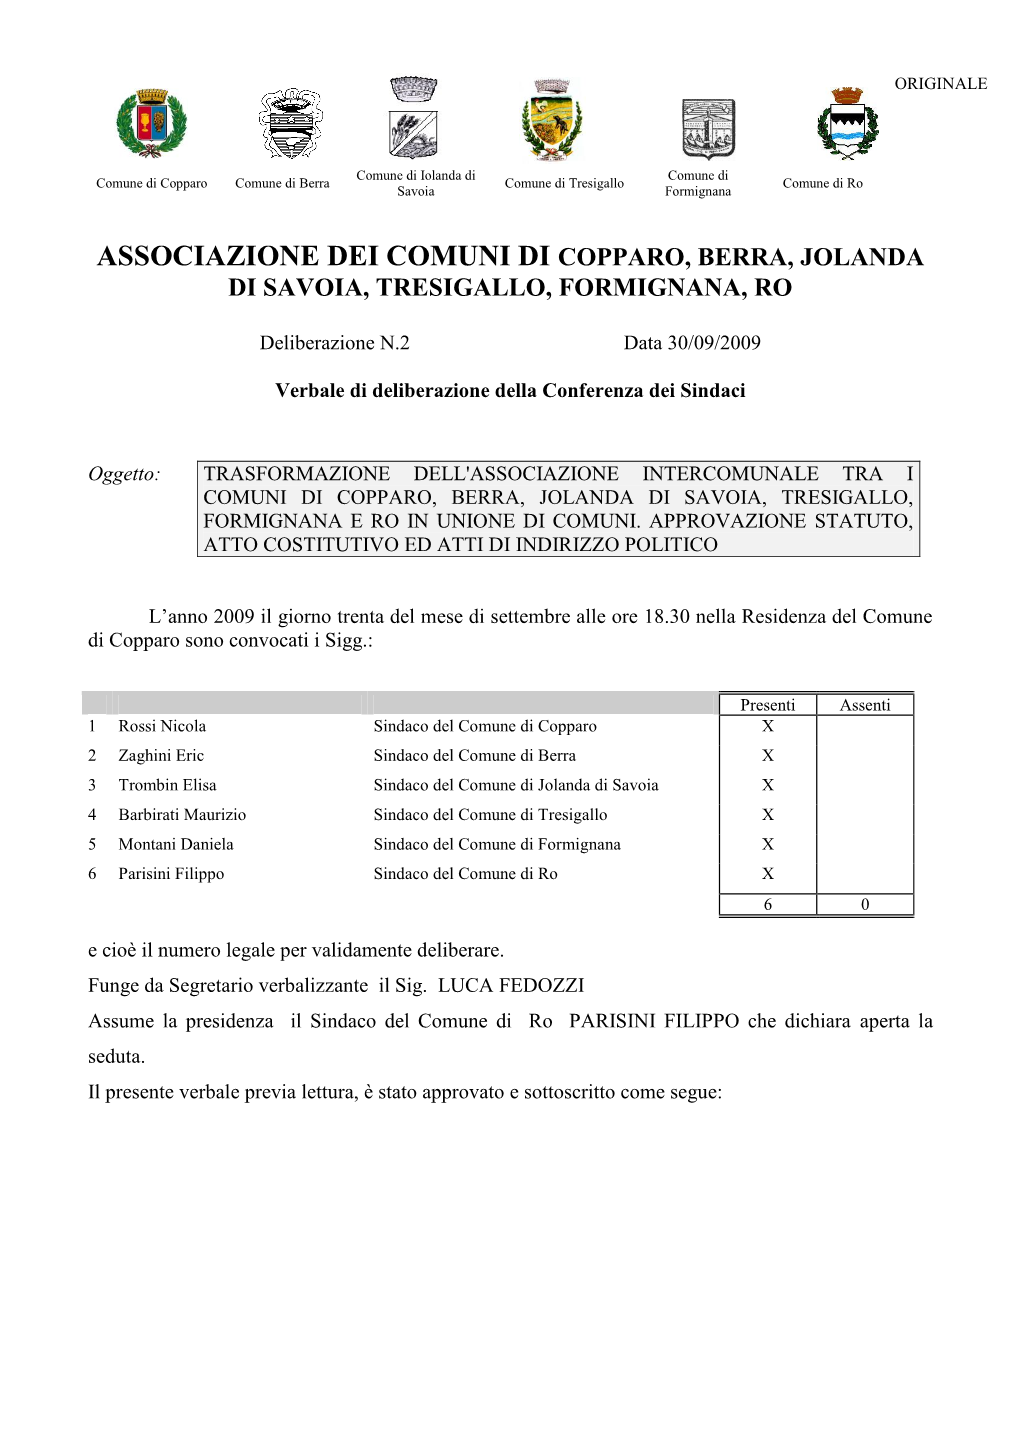 Associazione Dei Comuni Di Copparo, Berra, Jolanda Di Savoia, Tresigallo, Formignana, Ro